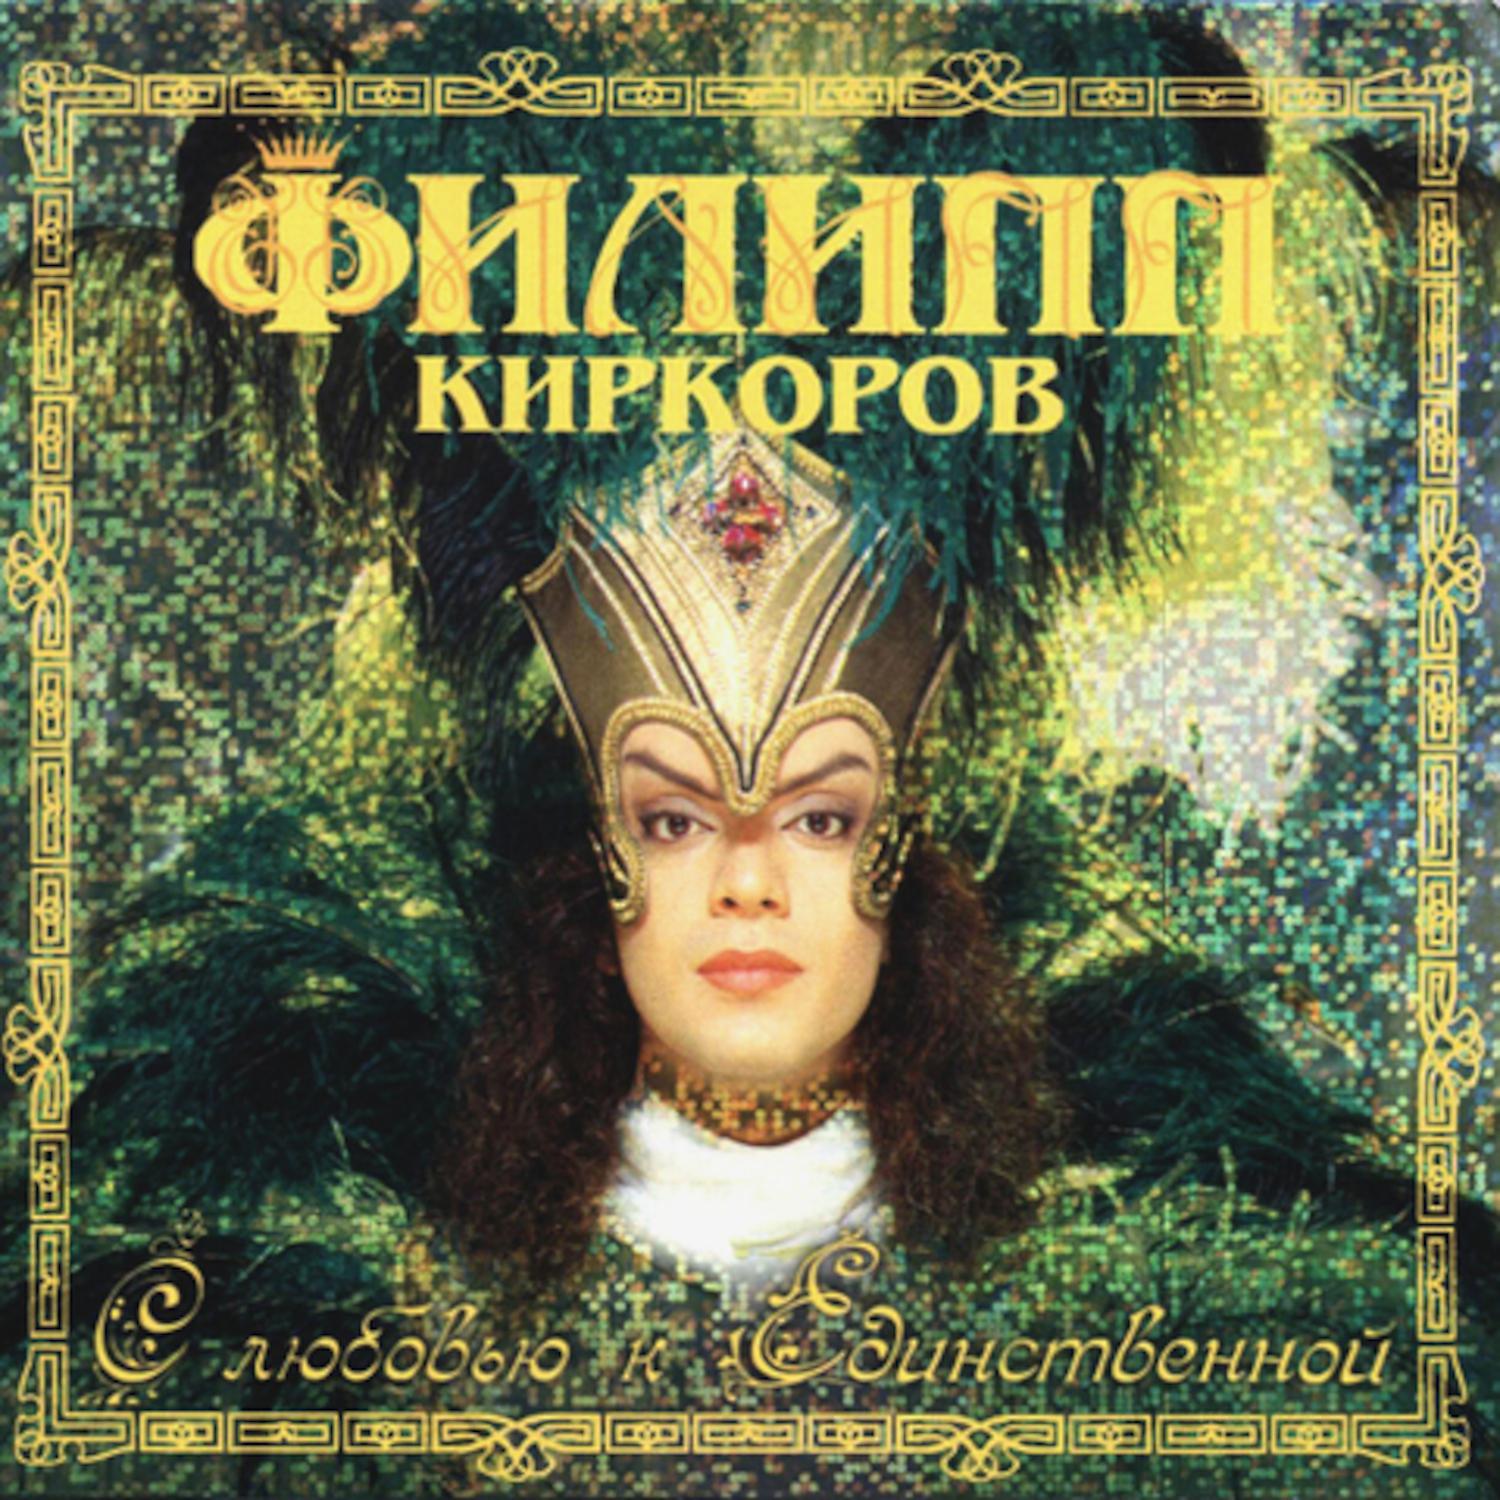 Альбом С любовью к единственной исполнителя Филипп Киркоров